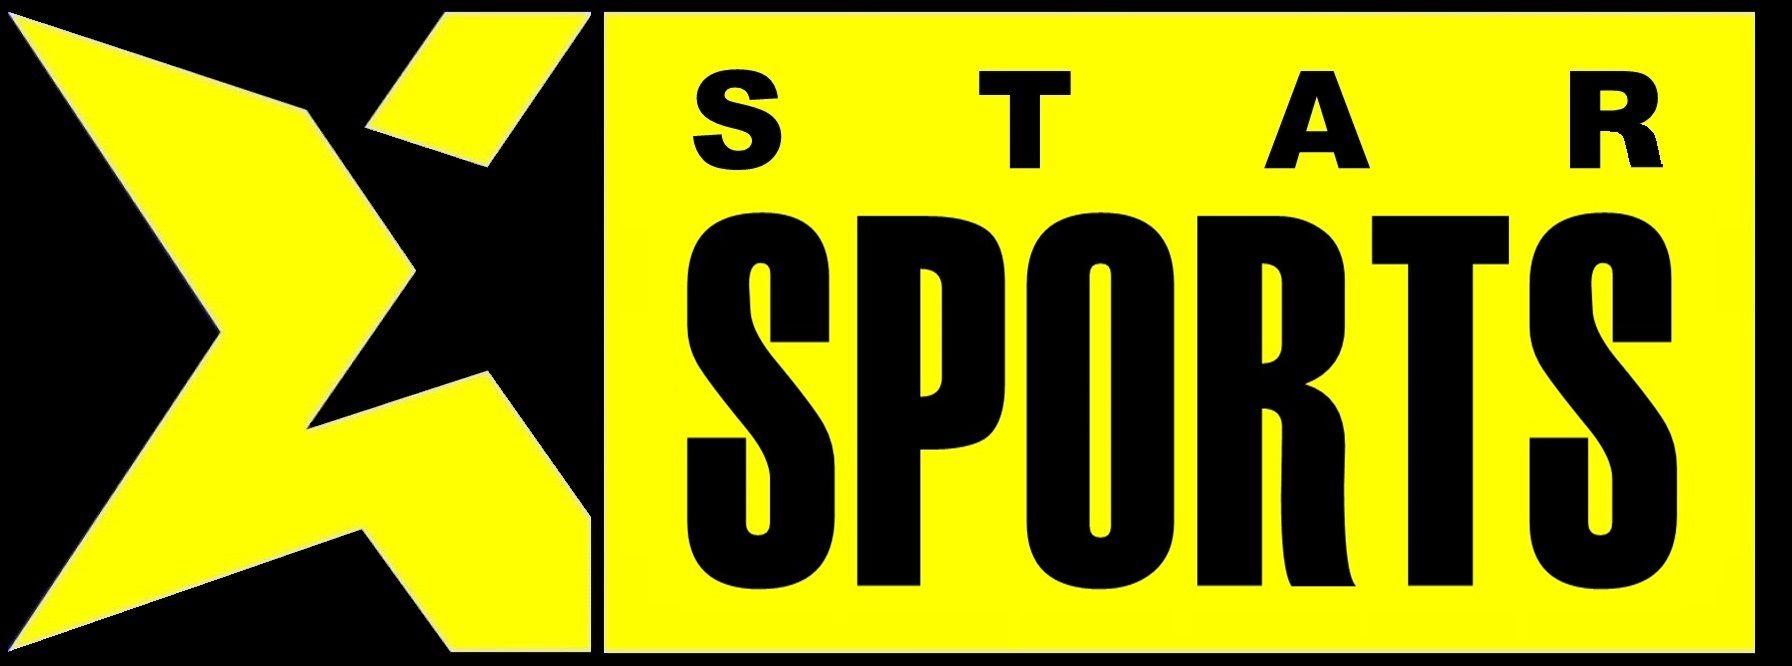 Star Sports Logo - Star Sports | Logopedia | FANDOM powered by Wikia